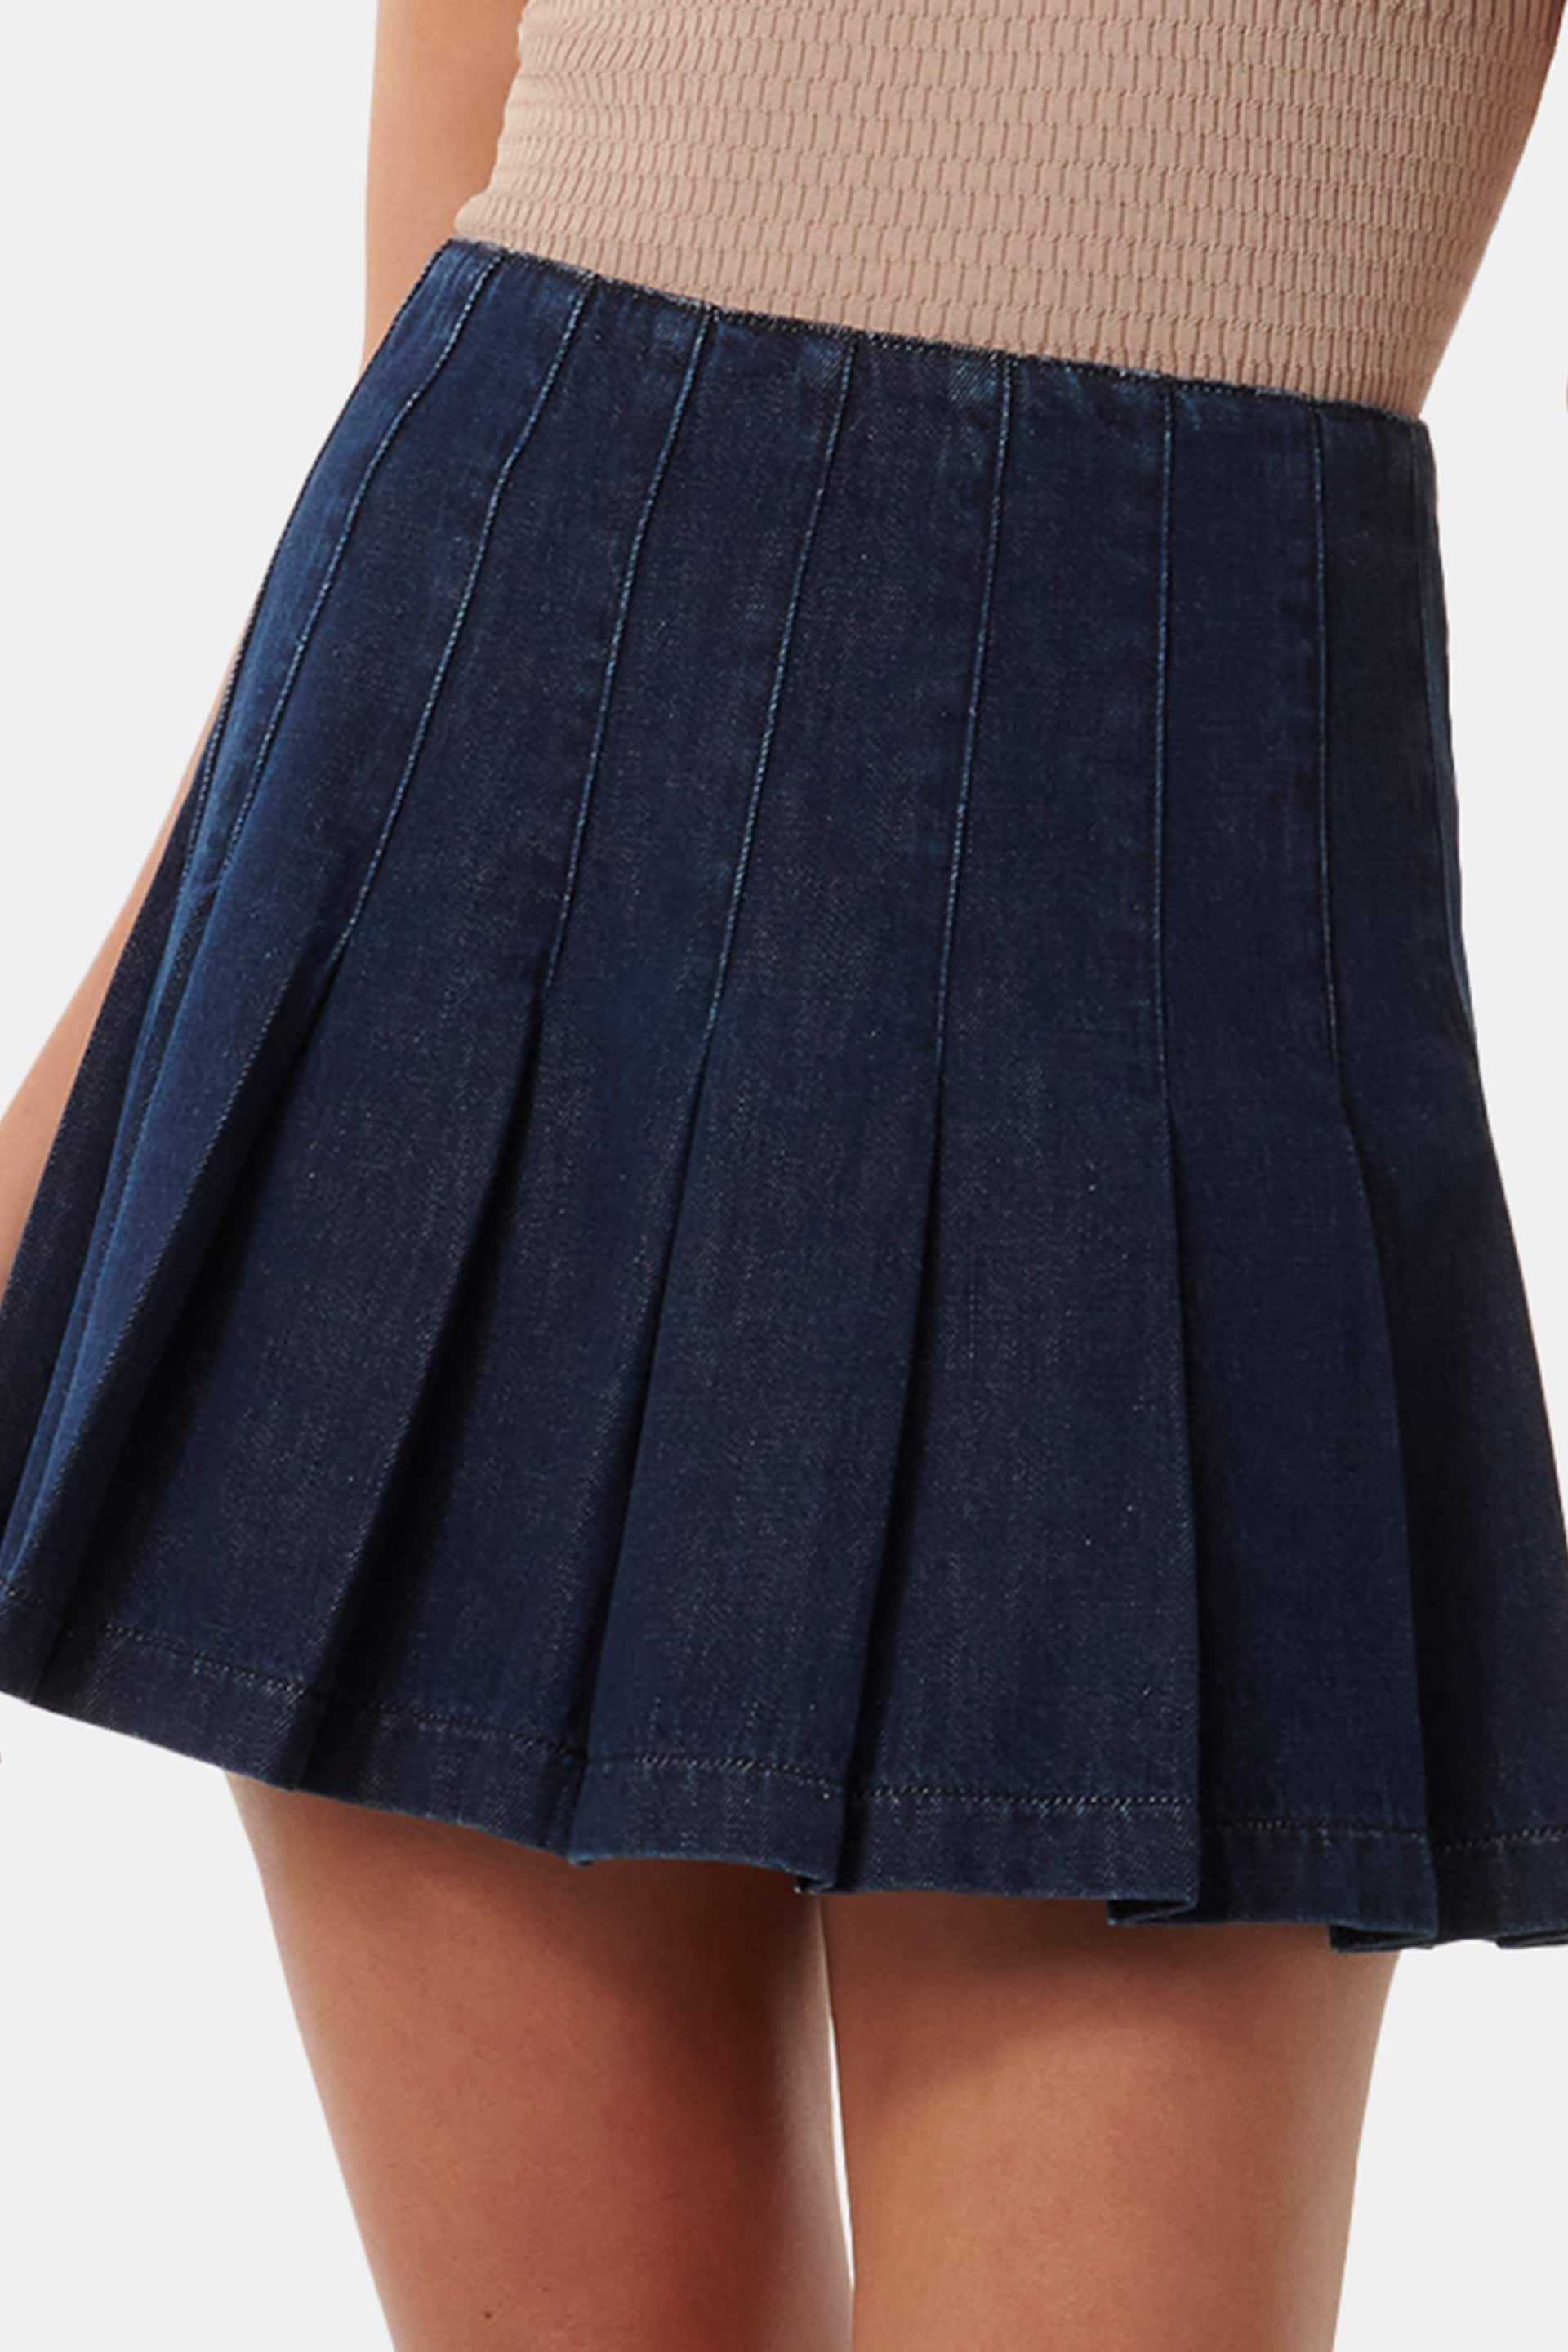 Forever New Blue Chelsea Denim Mini Skirt - Image 1 of 5